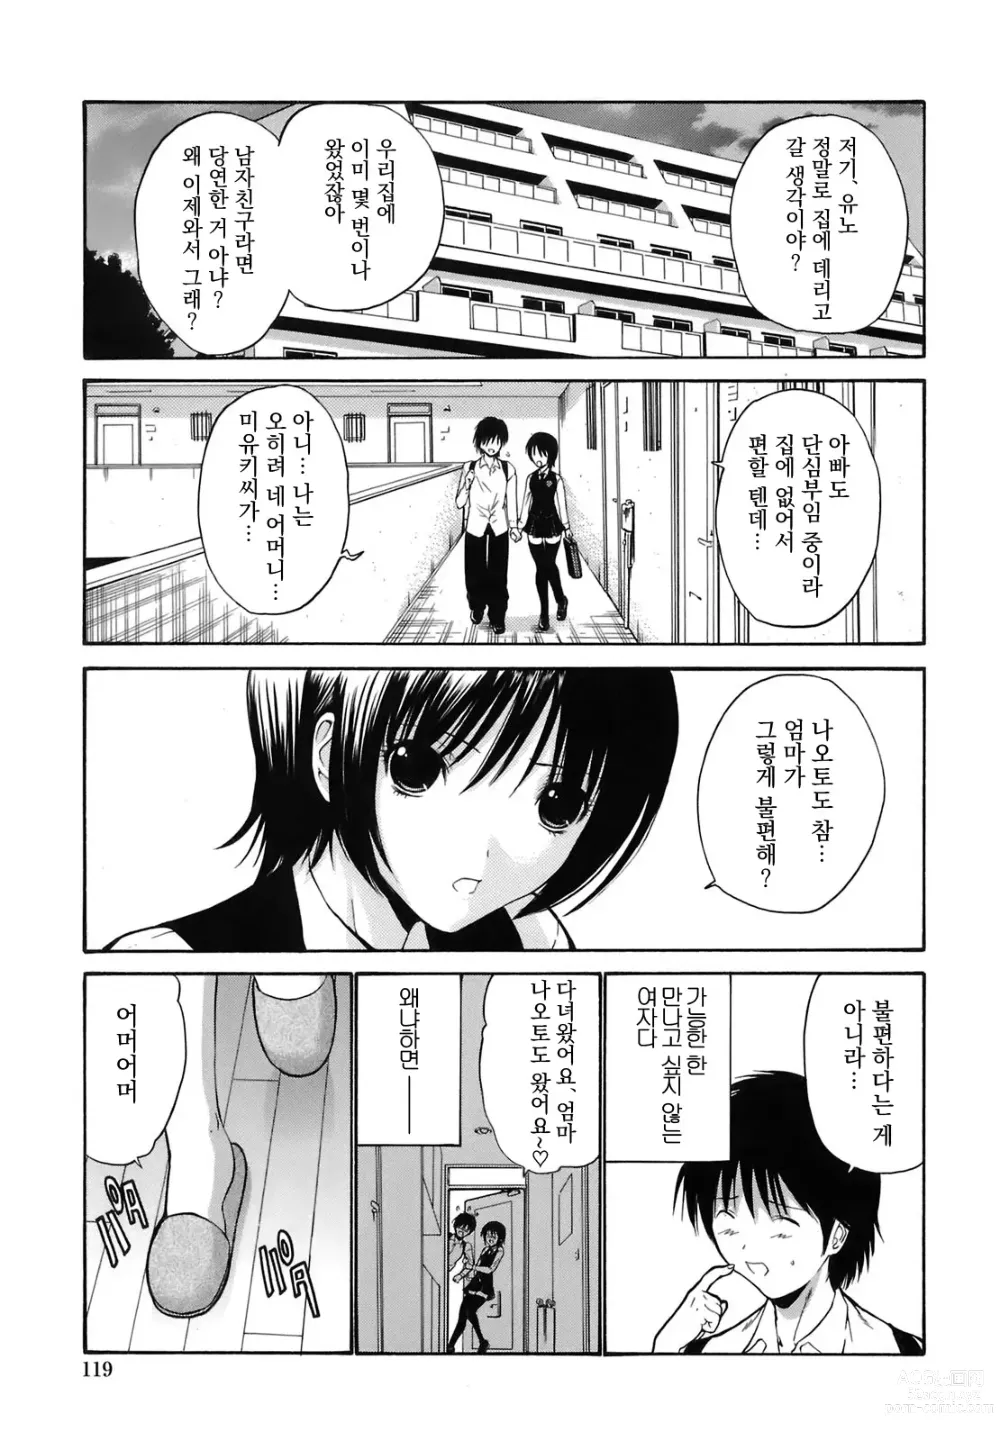 Page 1 of manga kanojo no haha -Zenpen-